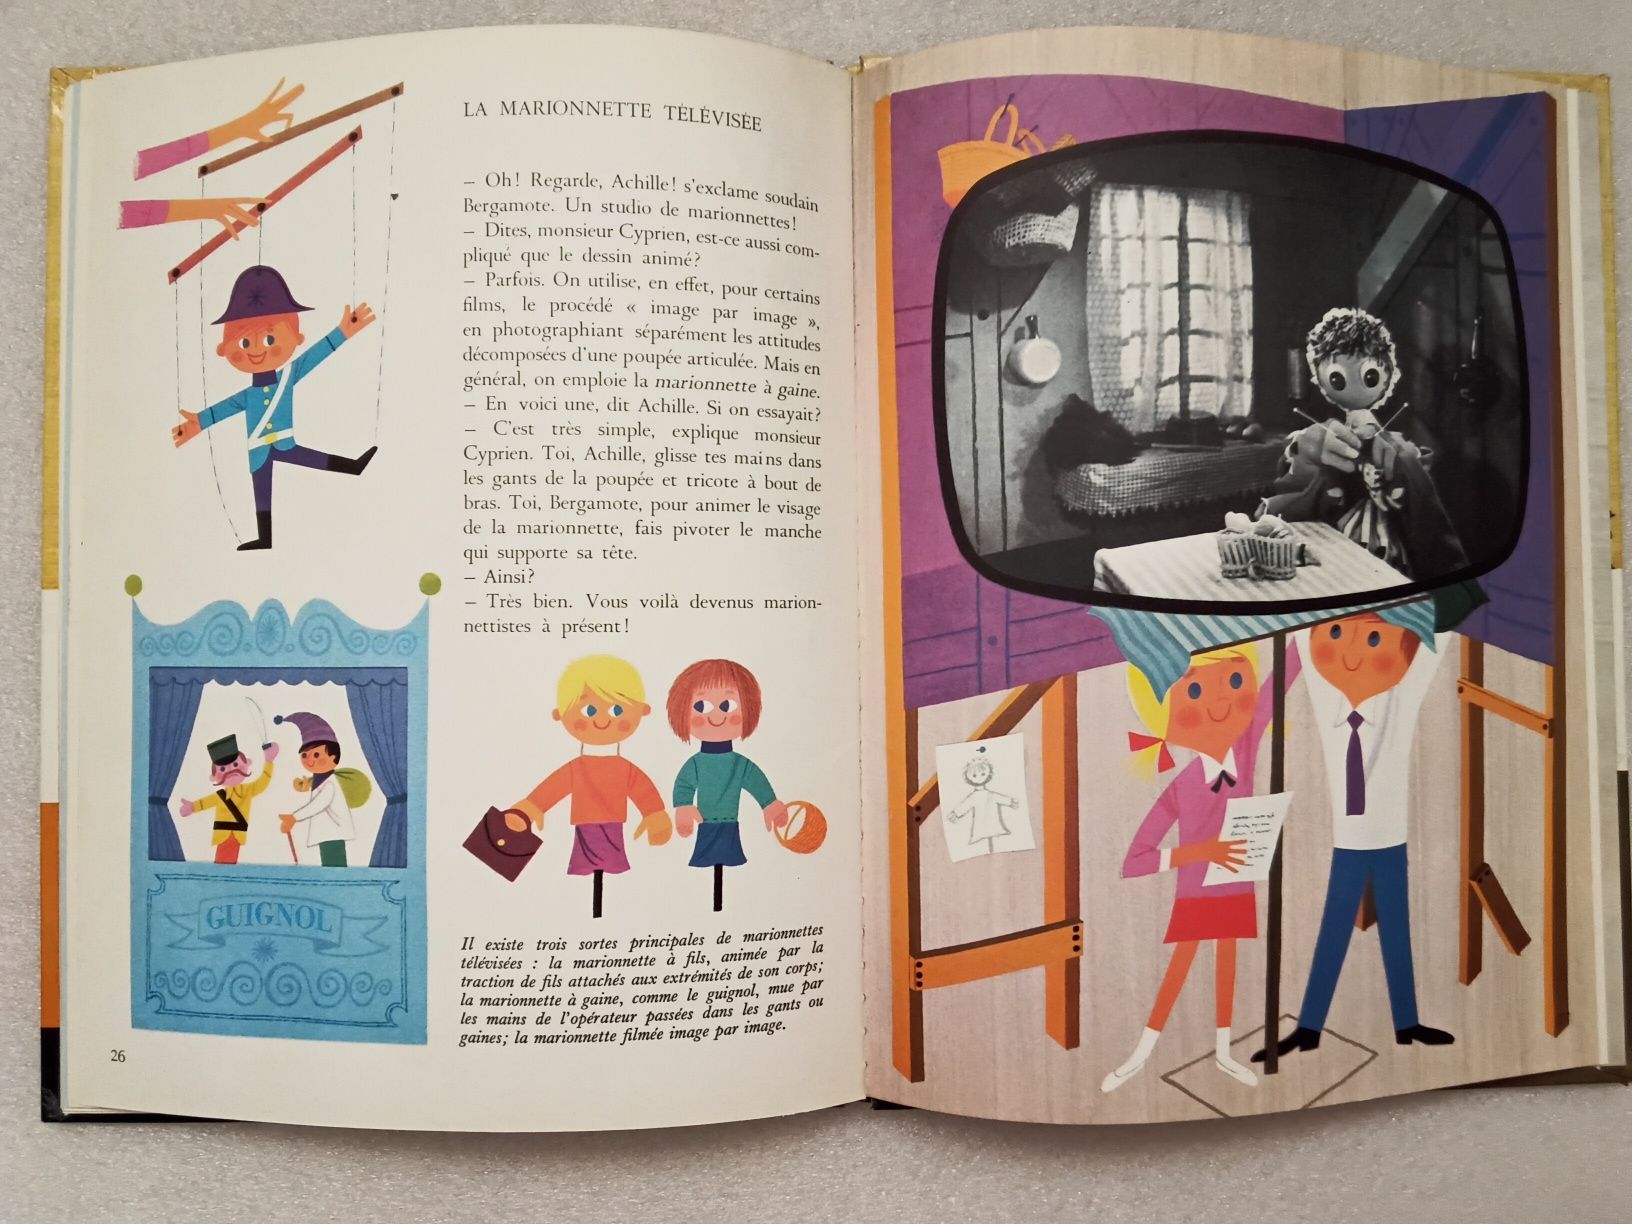 Alain Gree - La television książka francuska dla dzieci, 1967 rok